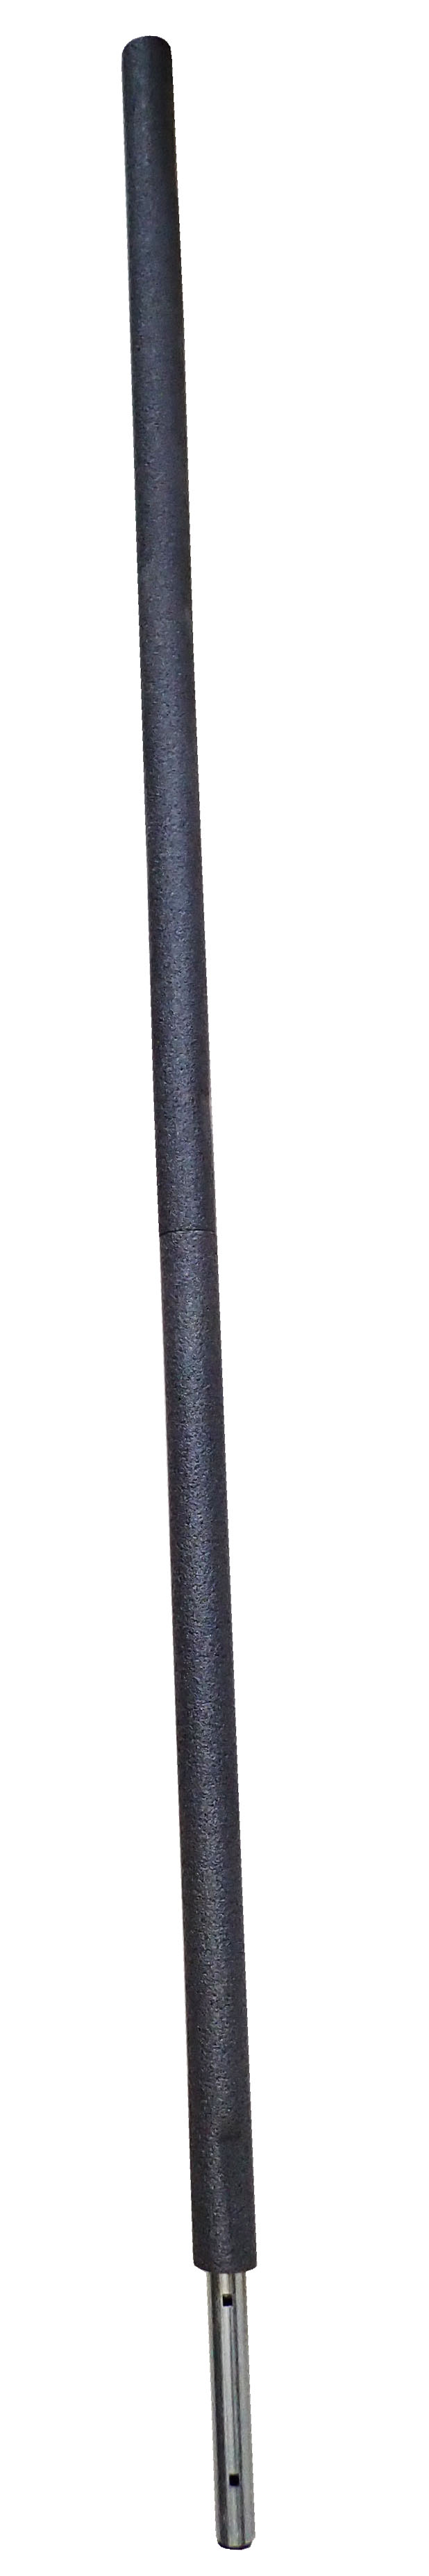 Náhradní vrchní tyč k trampolíně s ochranným návlekem - délka 205 cm CAA34